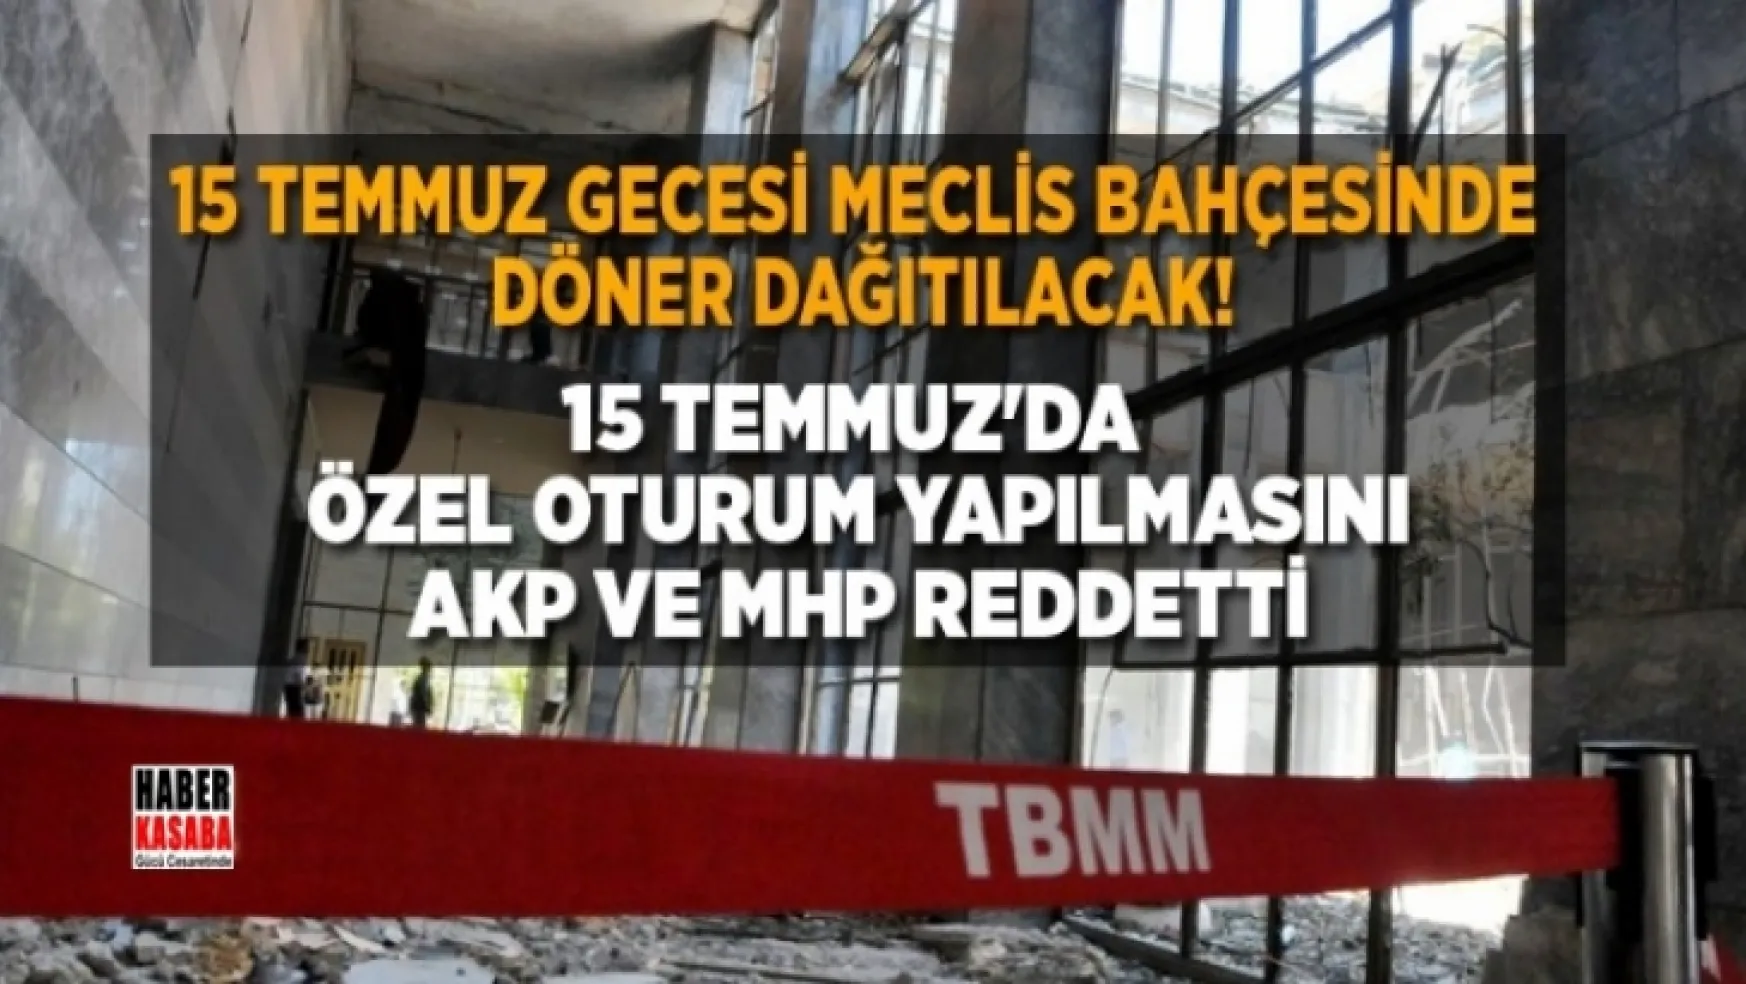 Özel oturum yapılmasını AKP ve MHP reddetti